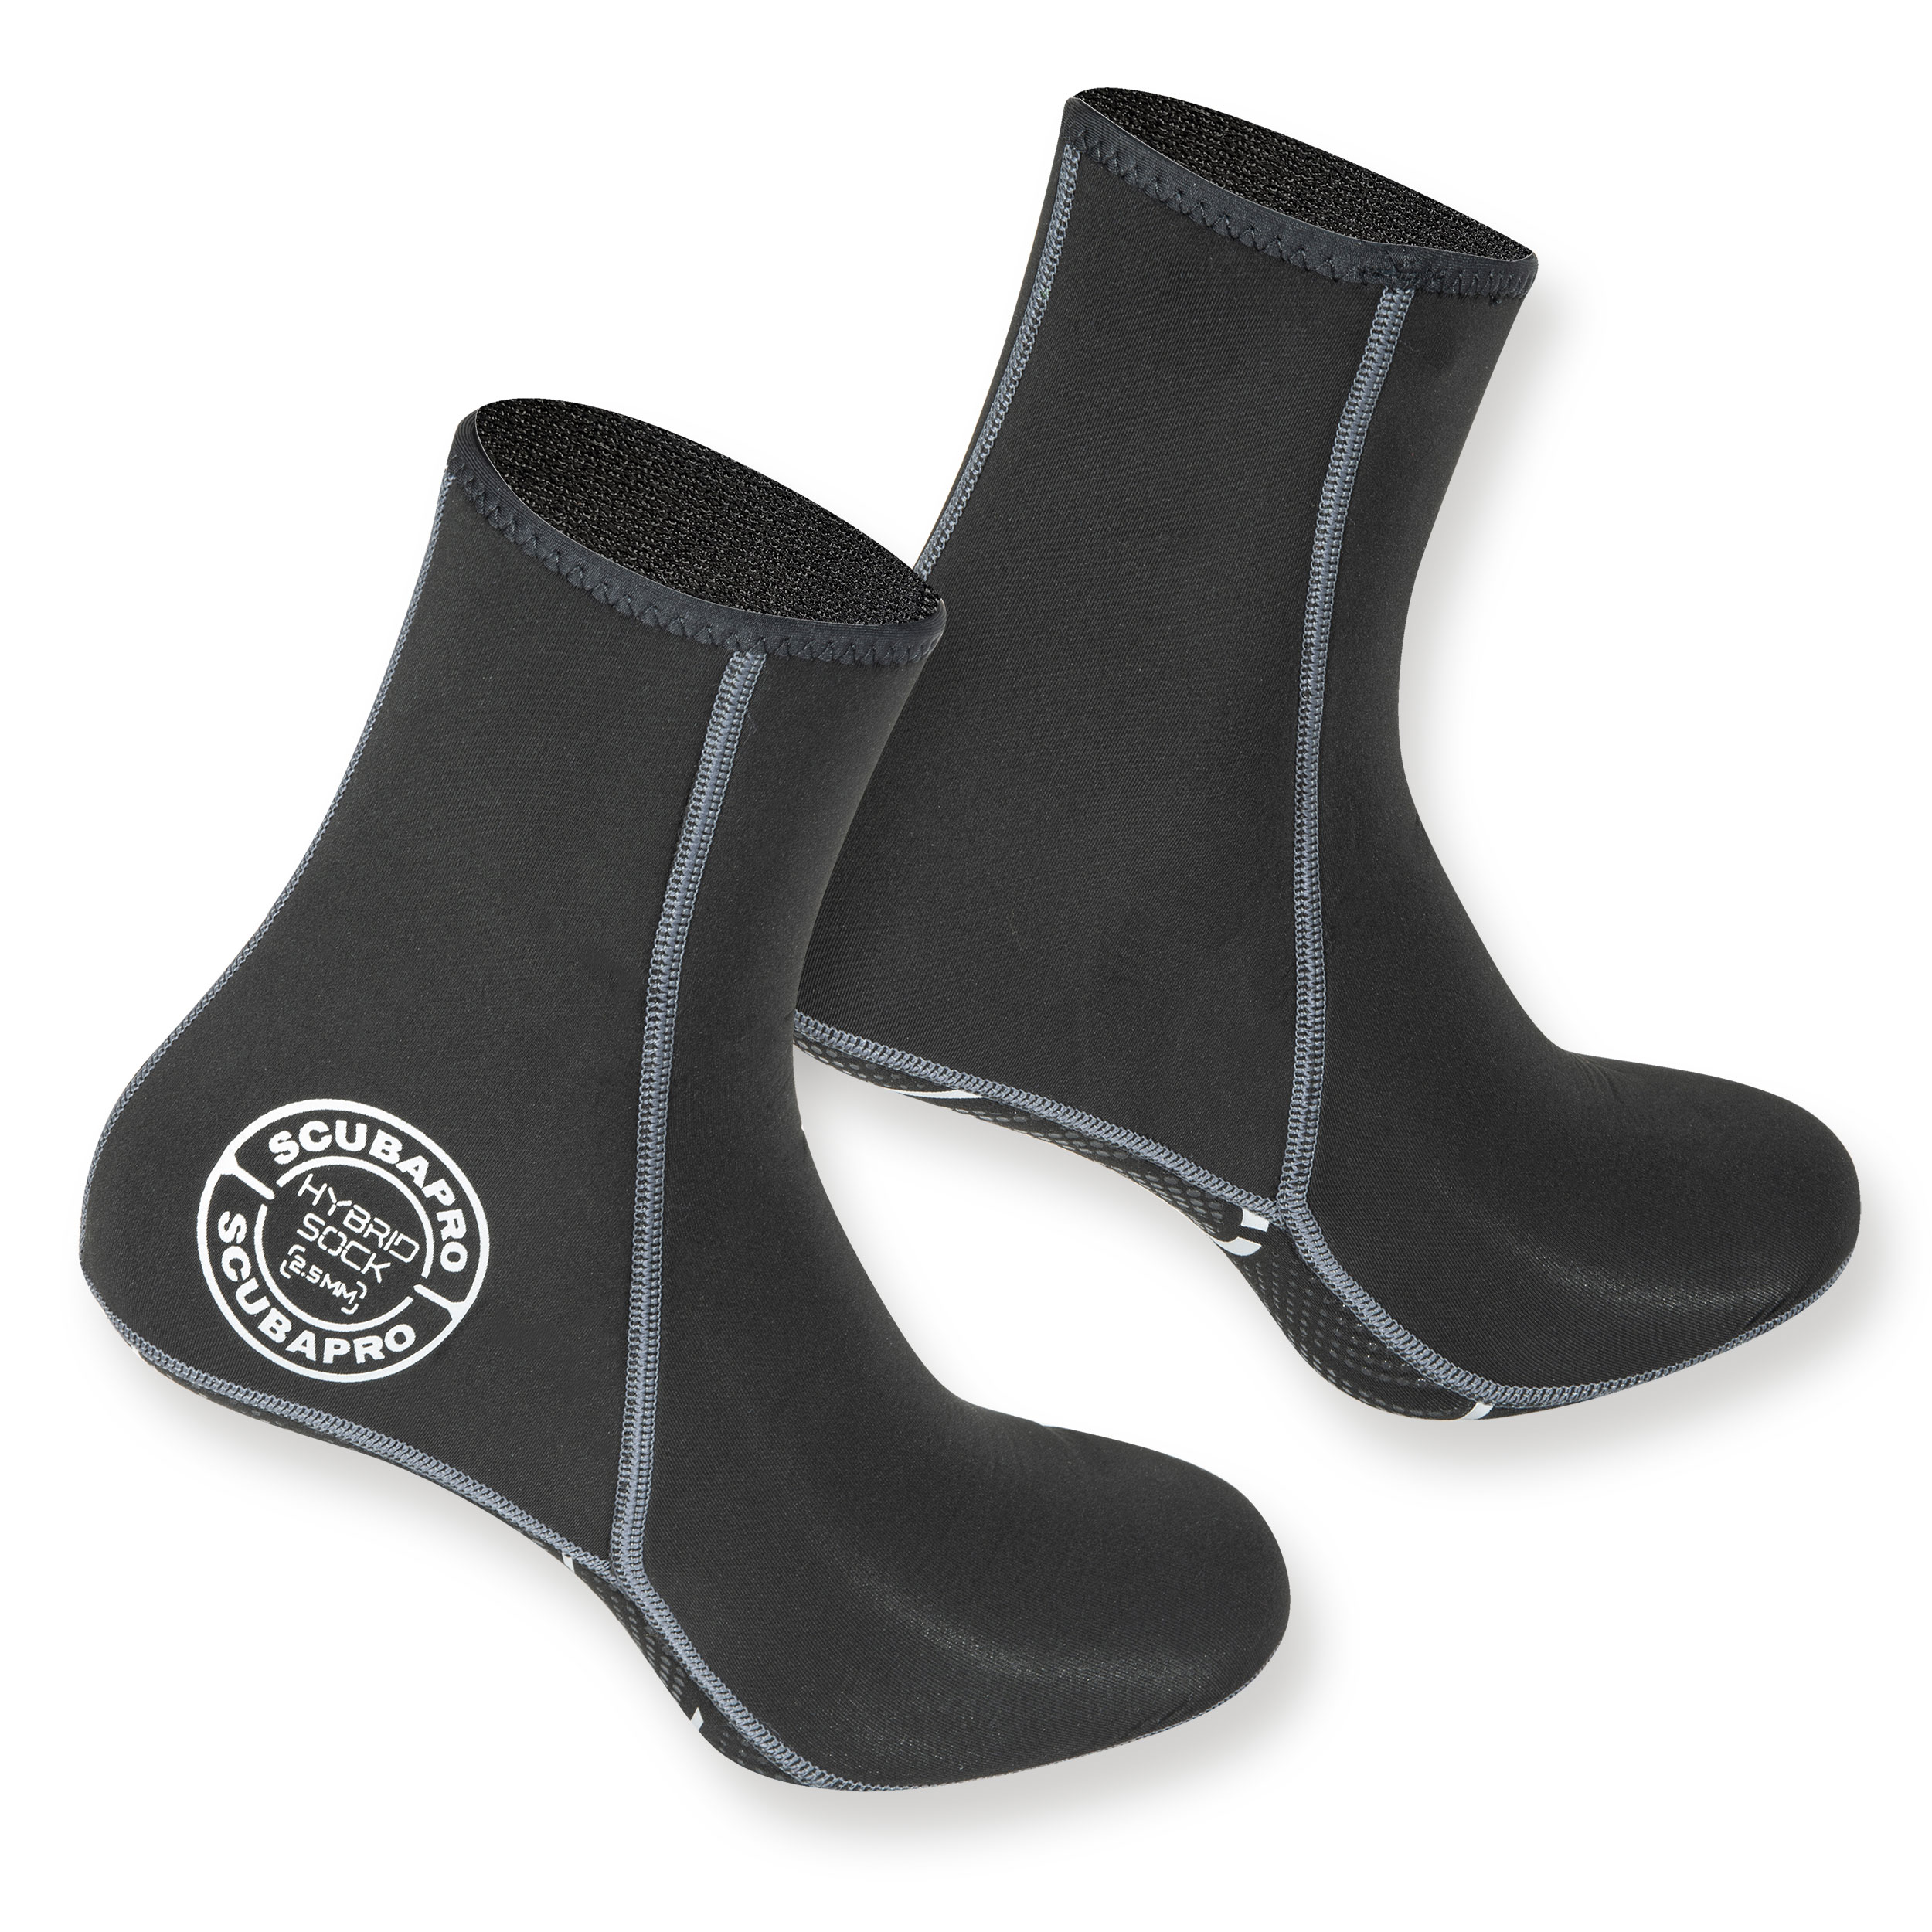 Scubapro Hybrid Socks 2,5 mm SUP Neoprensocken rutschfest warme Füße 